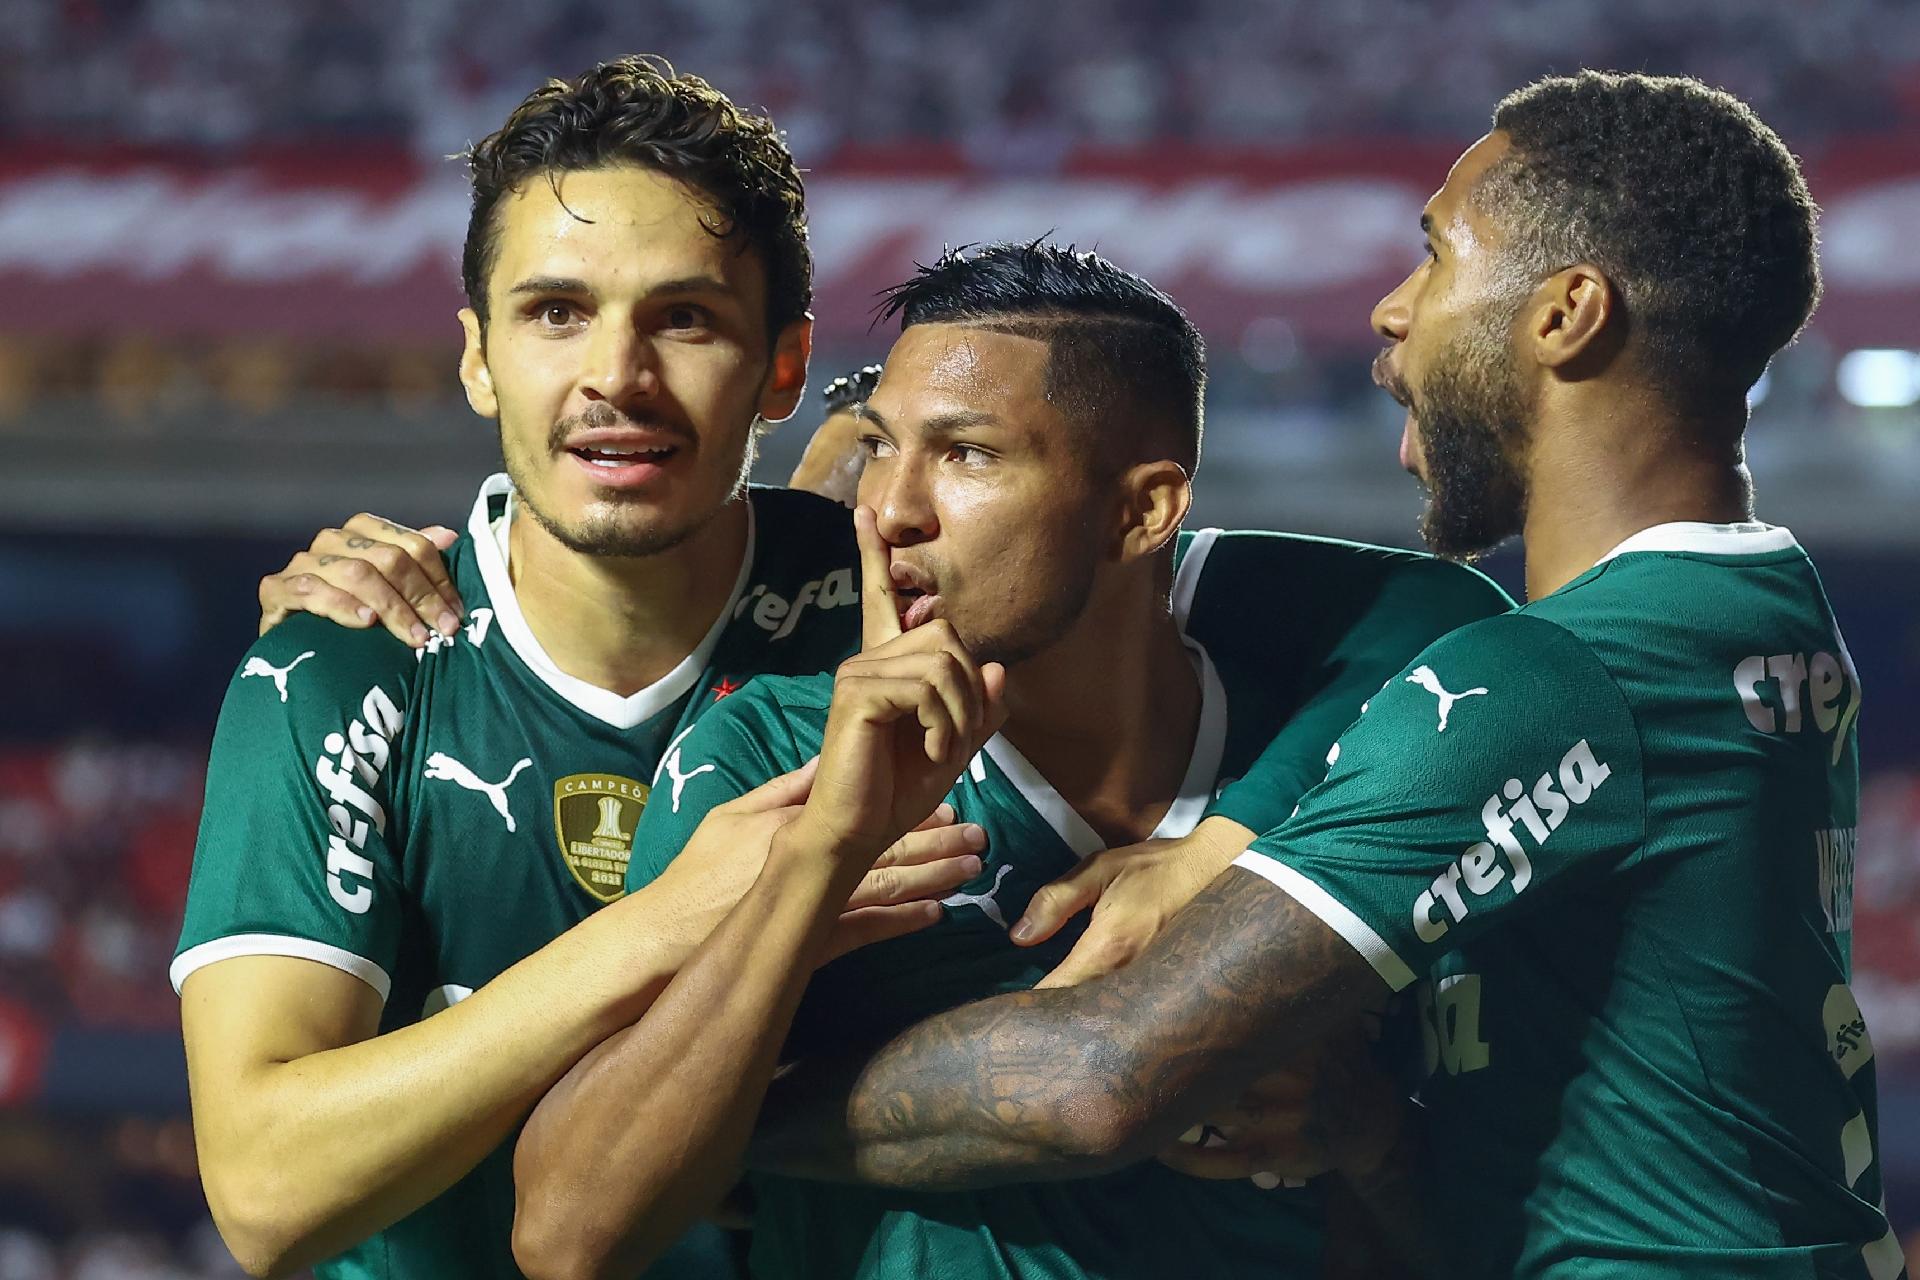 Campeonato Paulista: São Paulo x Palmeiras (10/03/2022)